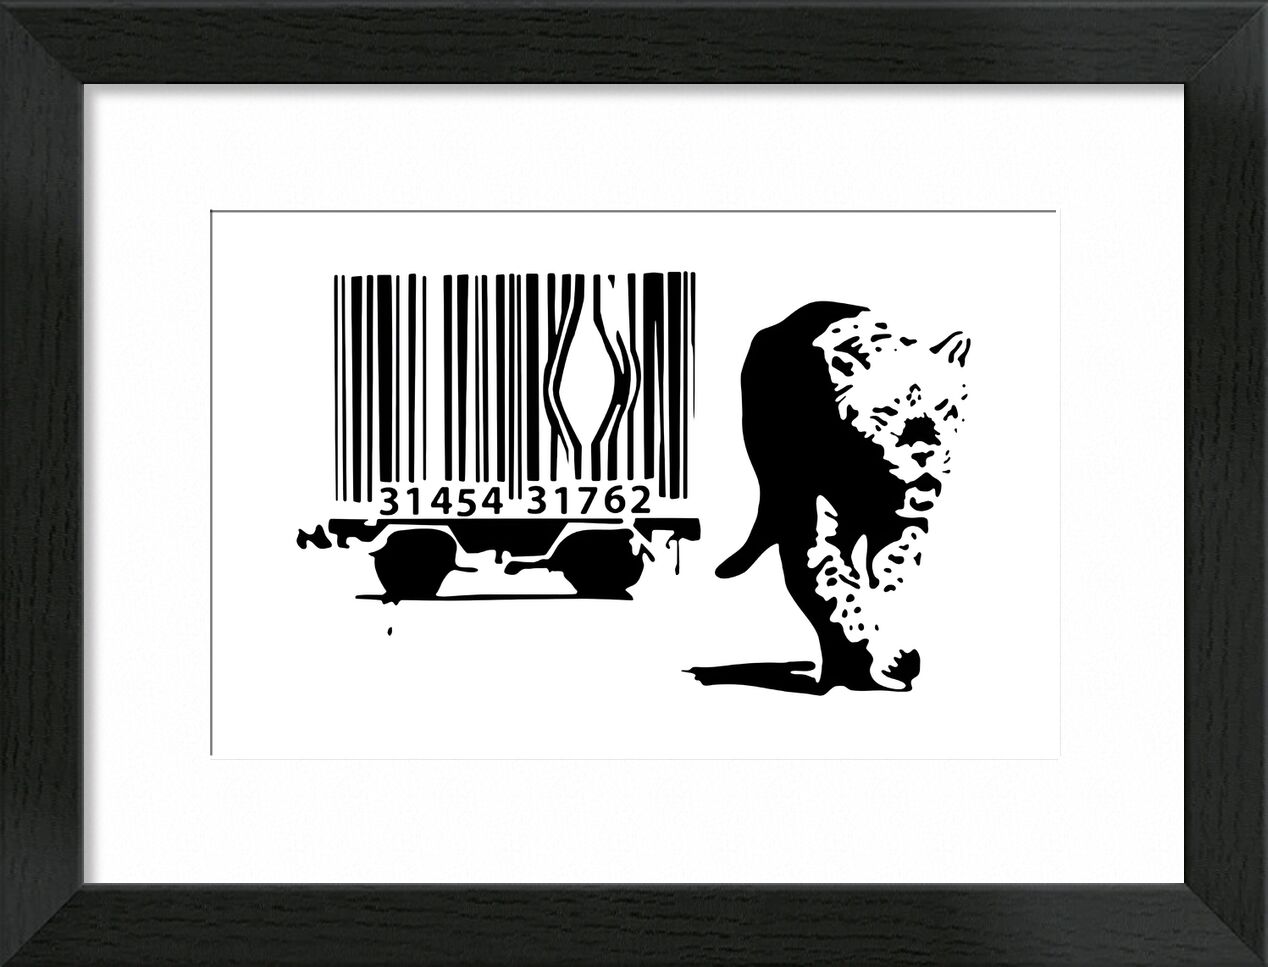 Barcode - BANKSY desde Bellas artes, Prodi Art, consumo, código de barras, leopardo, Banksy